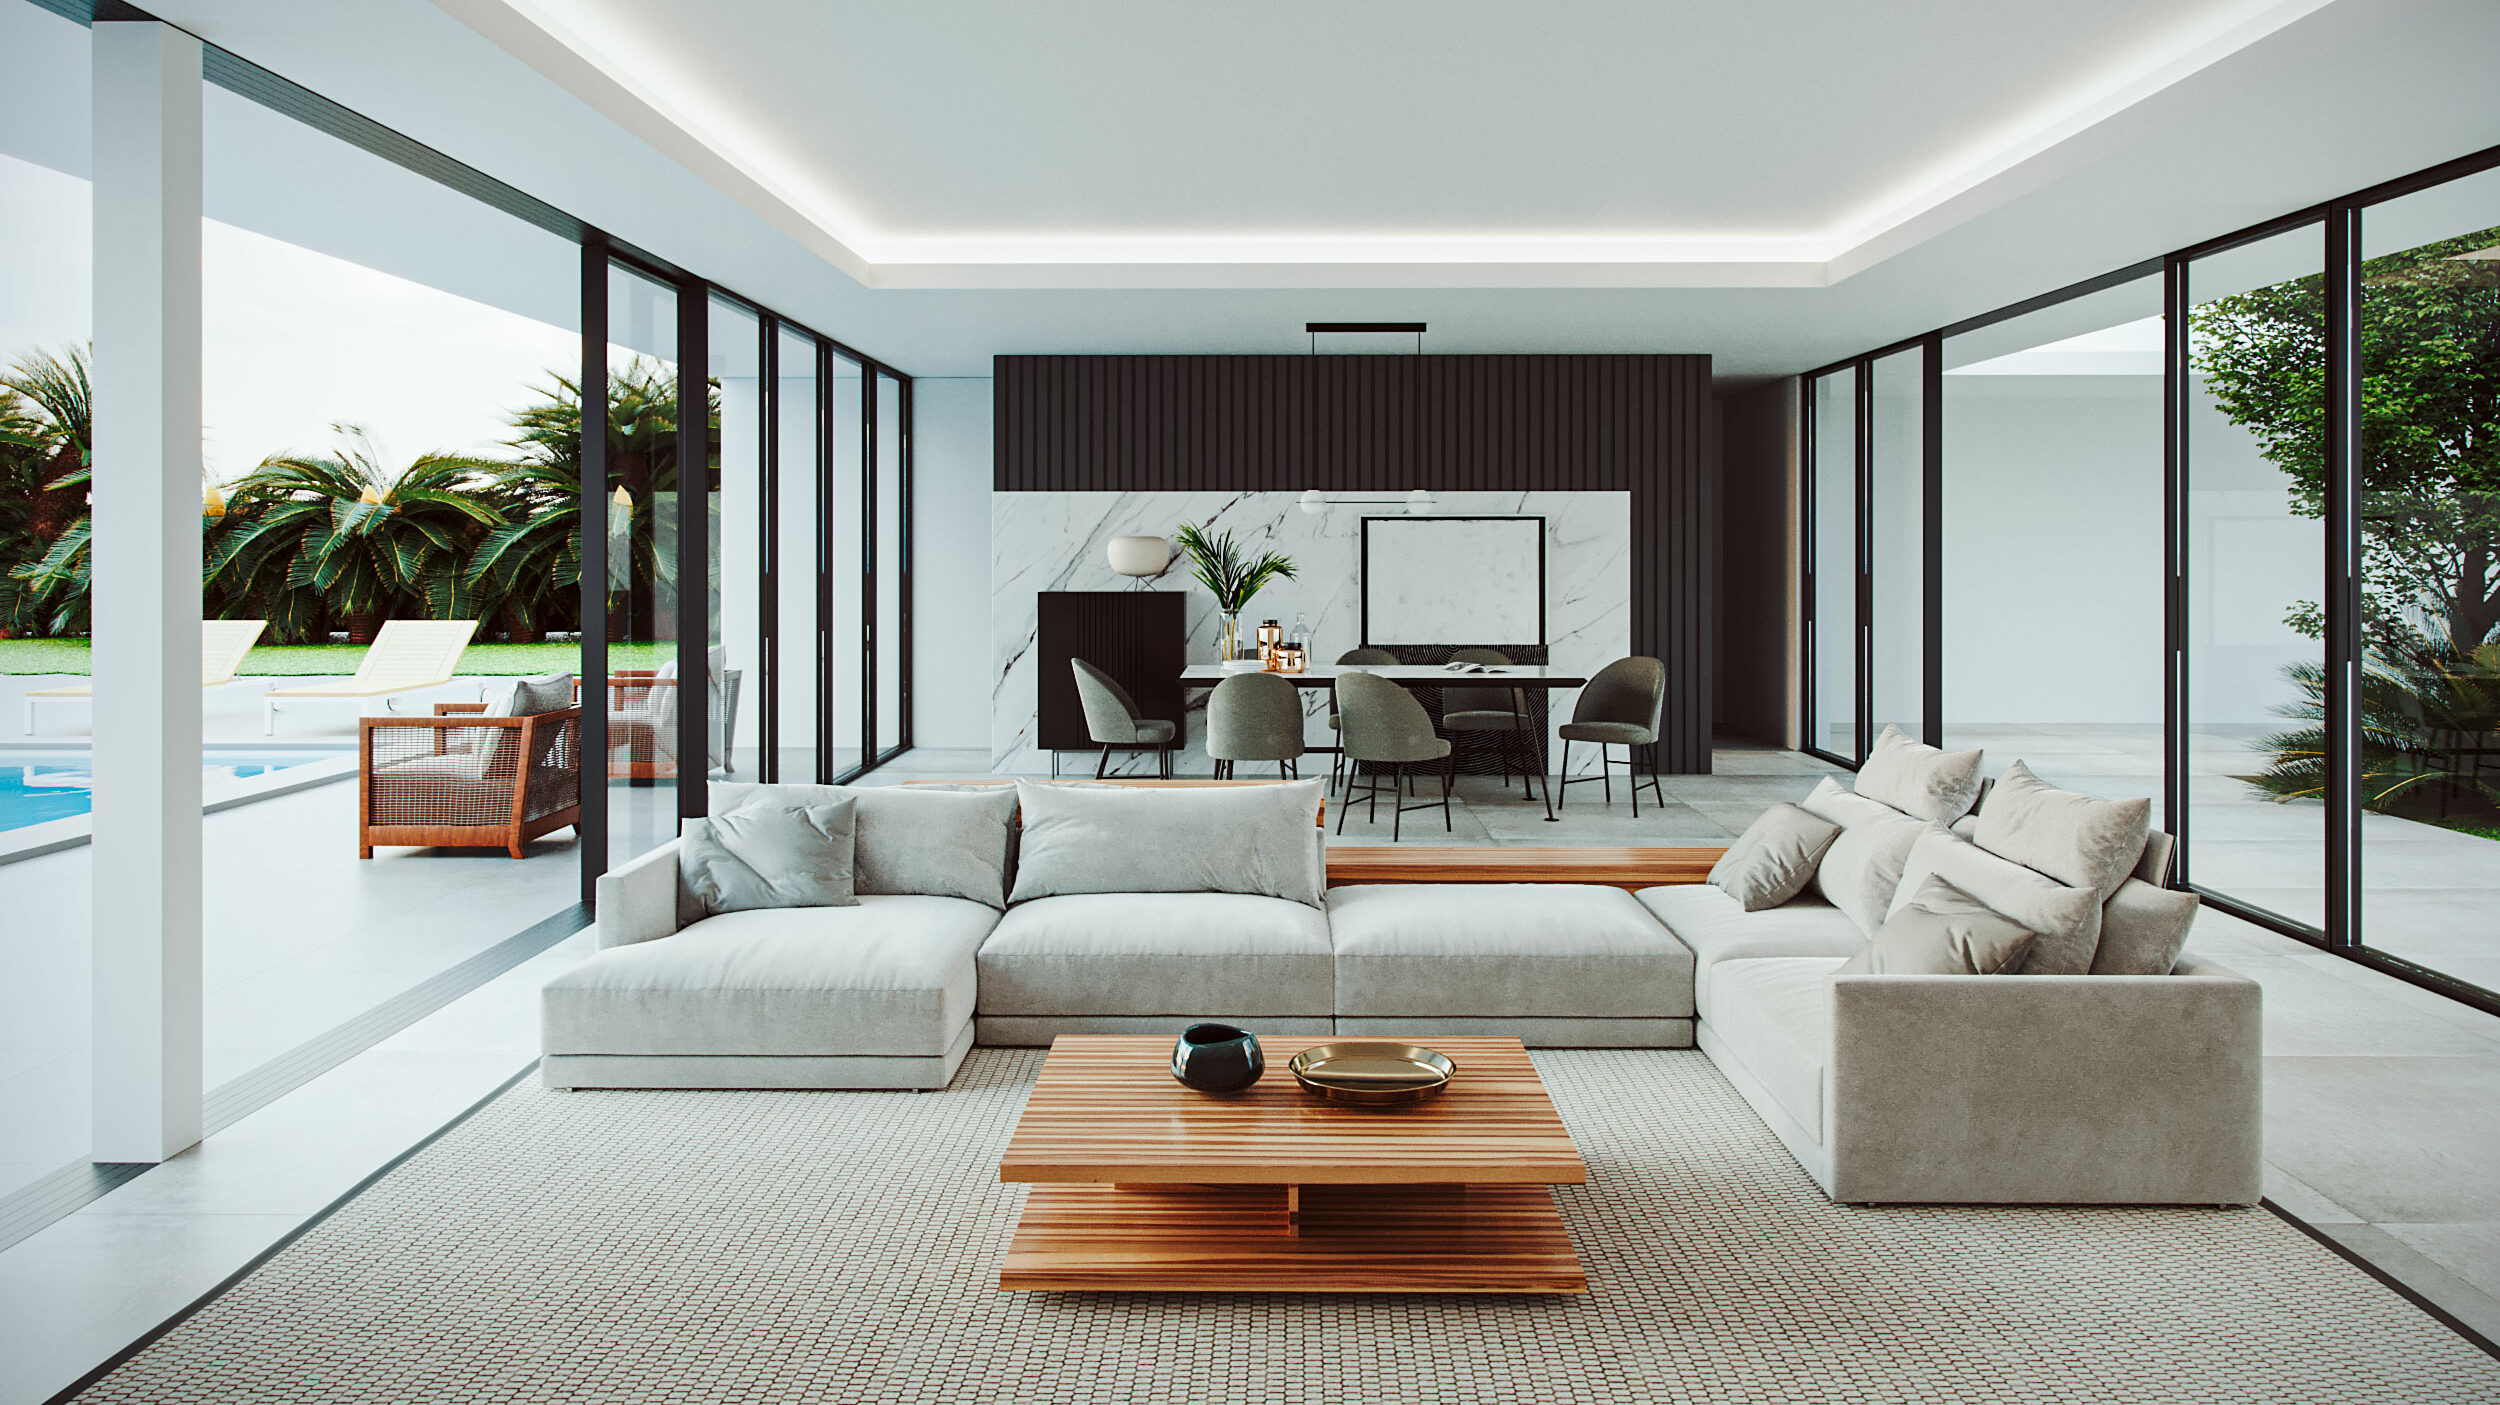 Infografía 3D del interior de una casa con decoración luminosa y minimalista